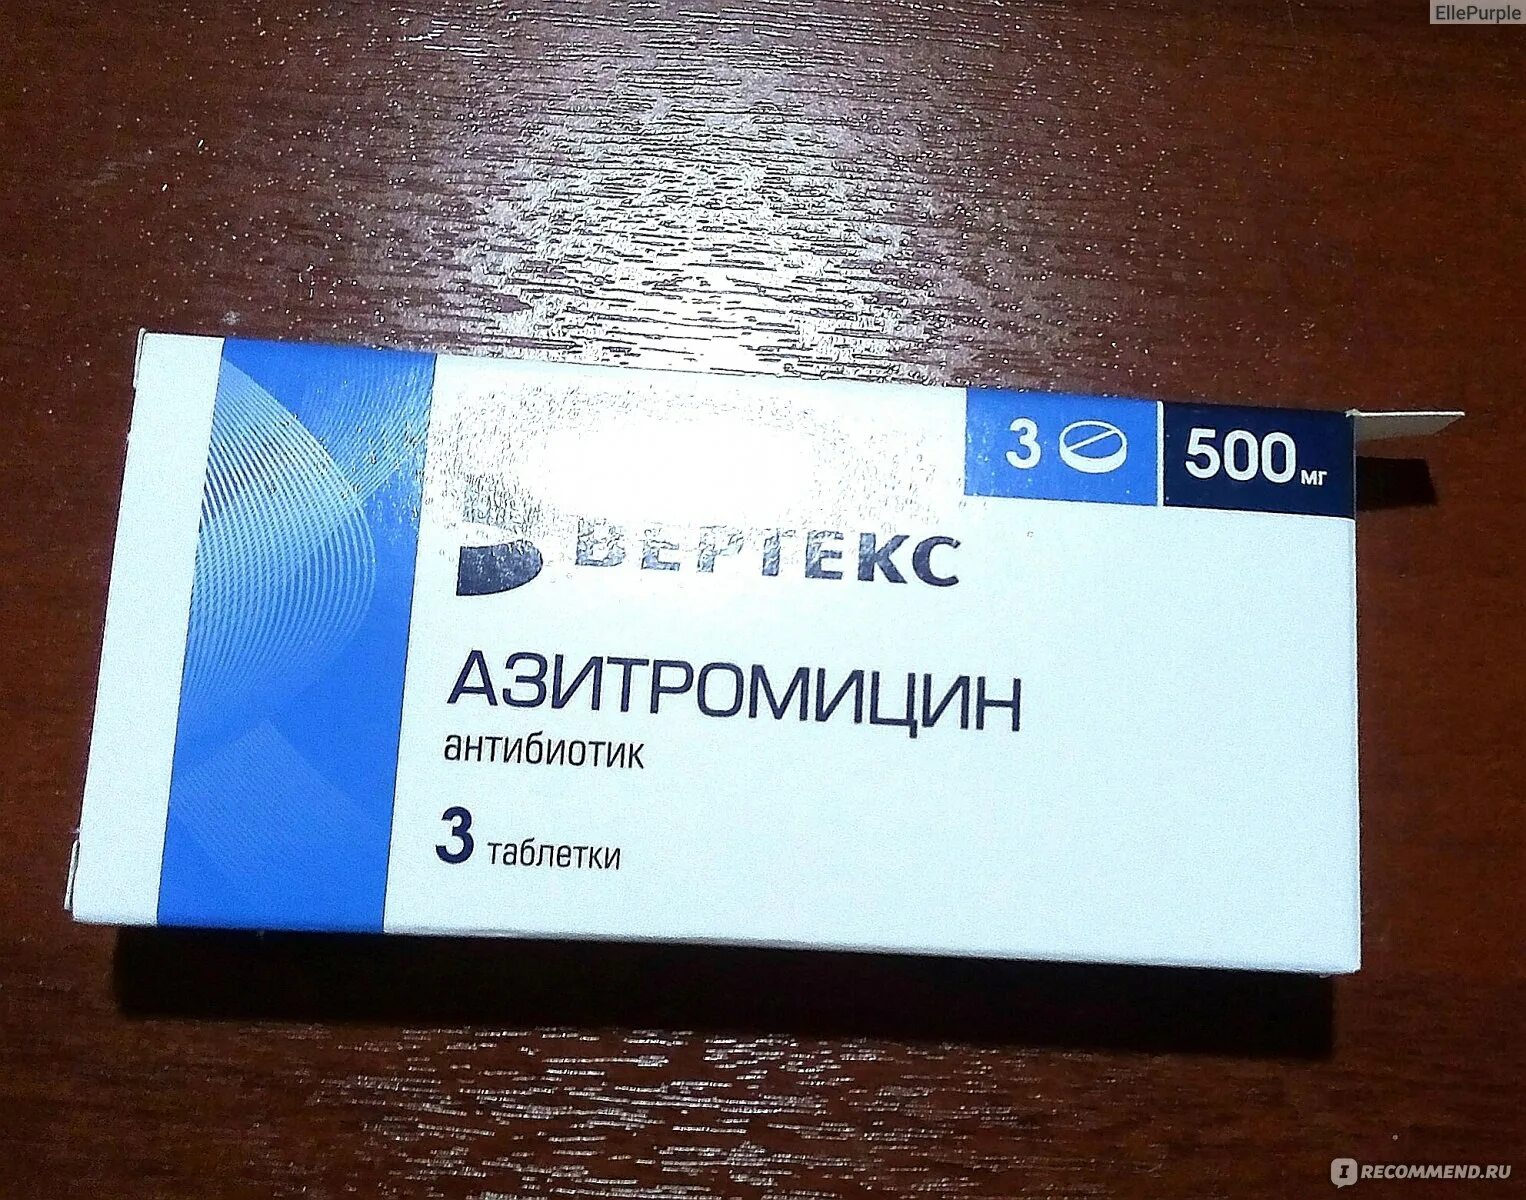 Антибиотик Азитромицин 500 мг. Азитромицин 500 таблетки антибиотики. Азитромицин 500 мг Вертекс. Вертекс таблетки Азитромицин антибиотик. Антибиотик взрослый 3 таблетки название